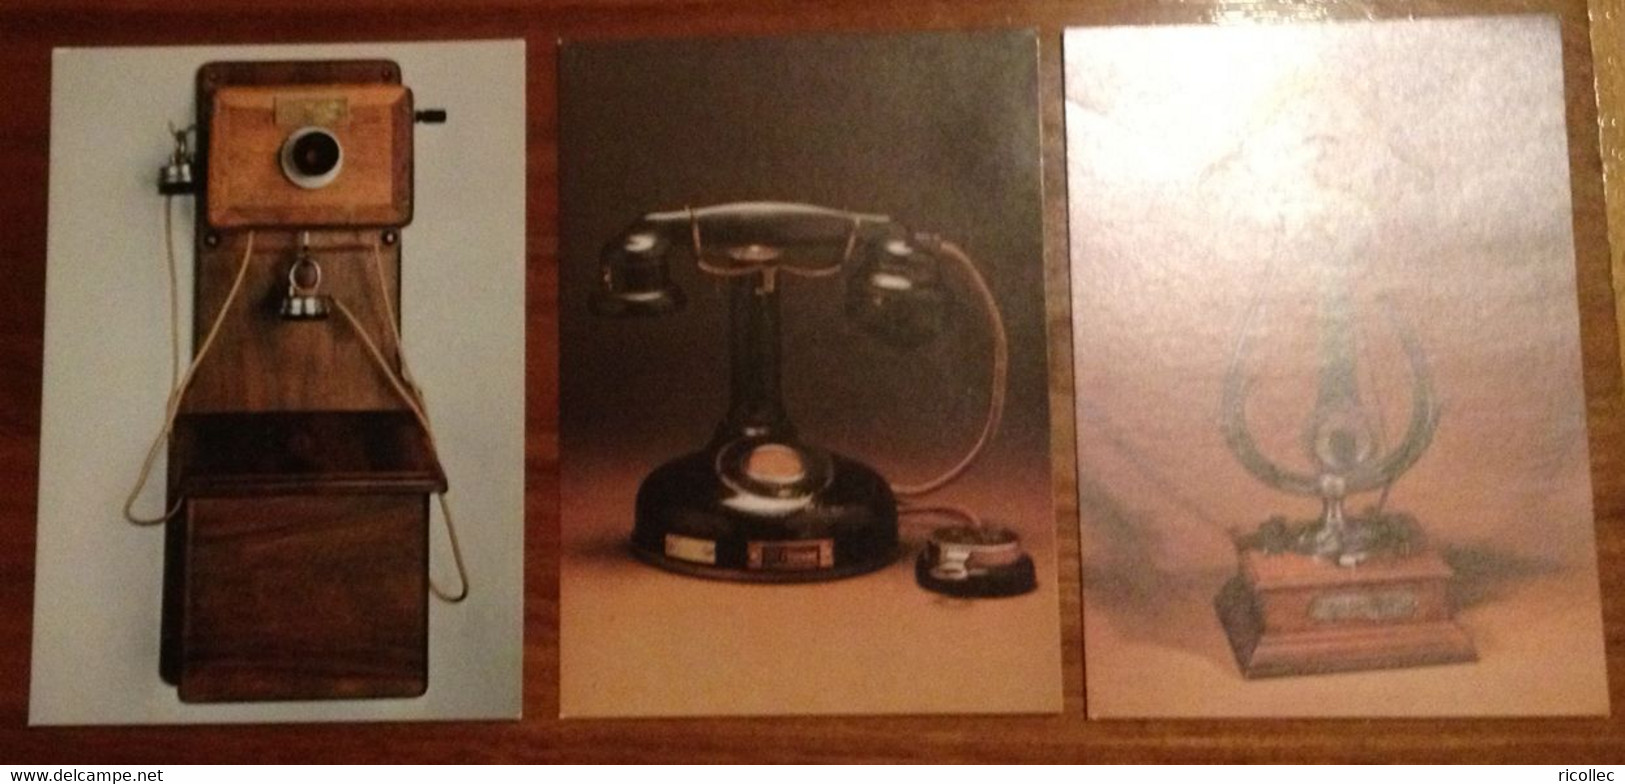 3 Postcards Historique Des Telecomunications Telecommunication History 1906 - 1910 - 1924 - Photos